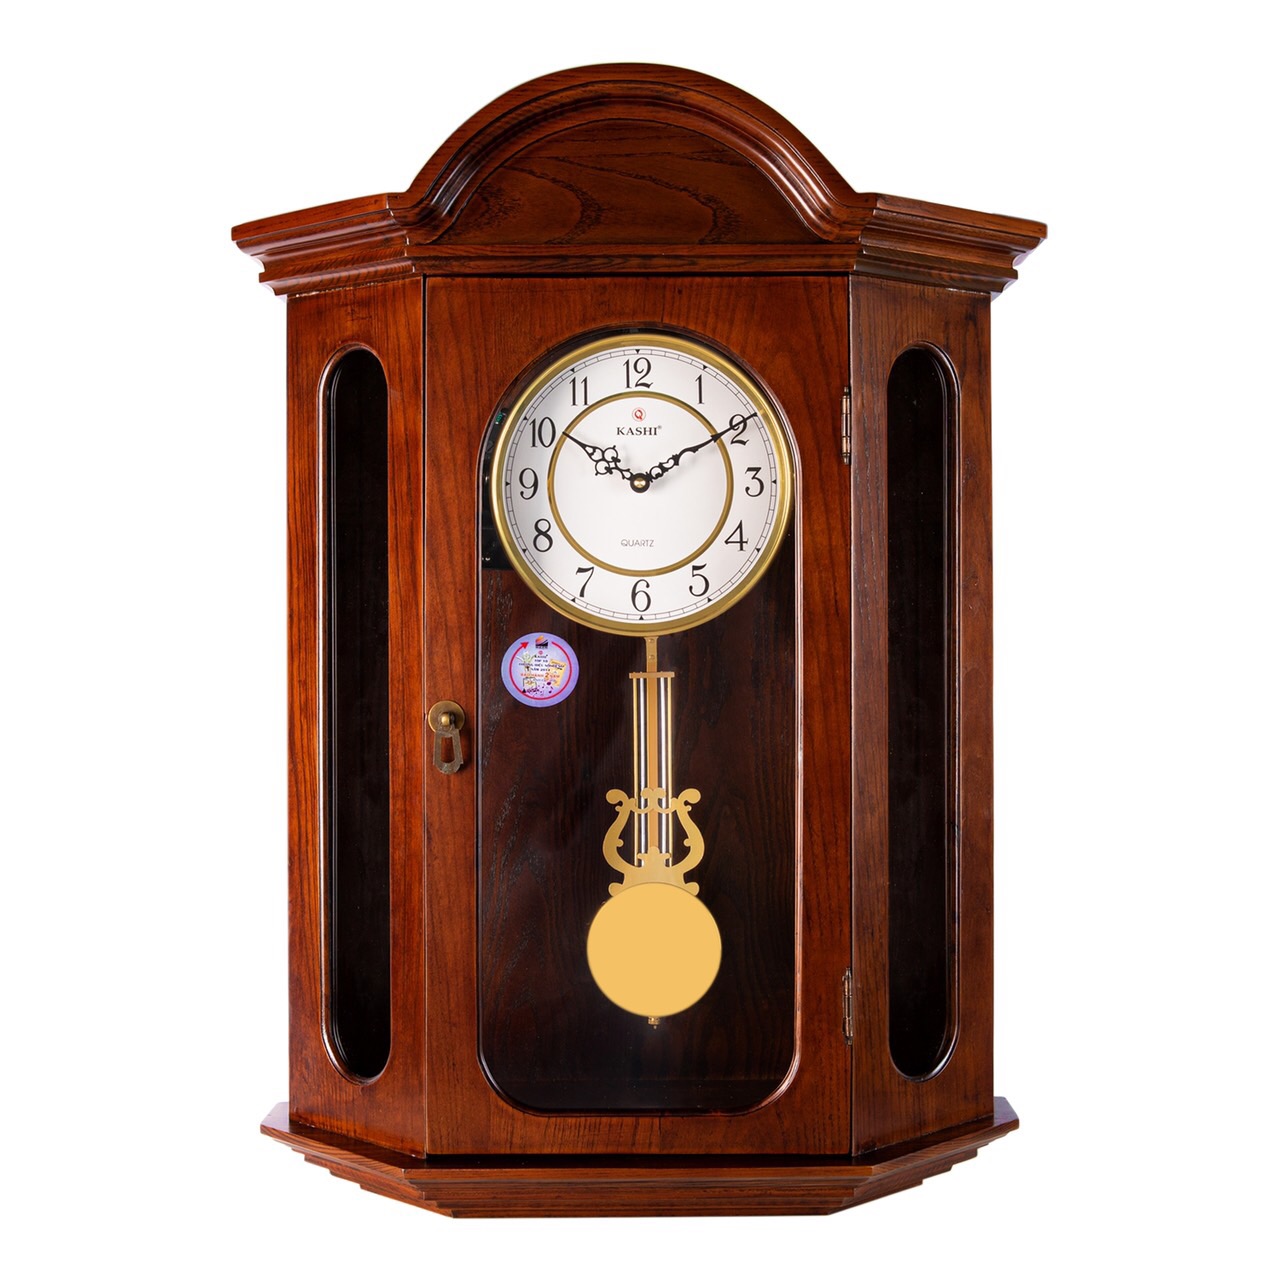 Đồng hồ treo tường quả lắc New HM888 số Học trò Kashi Clock